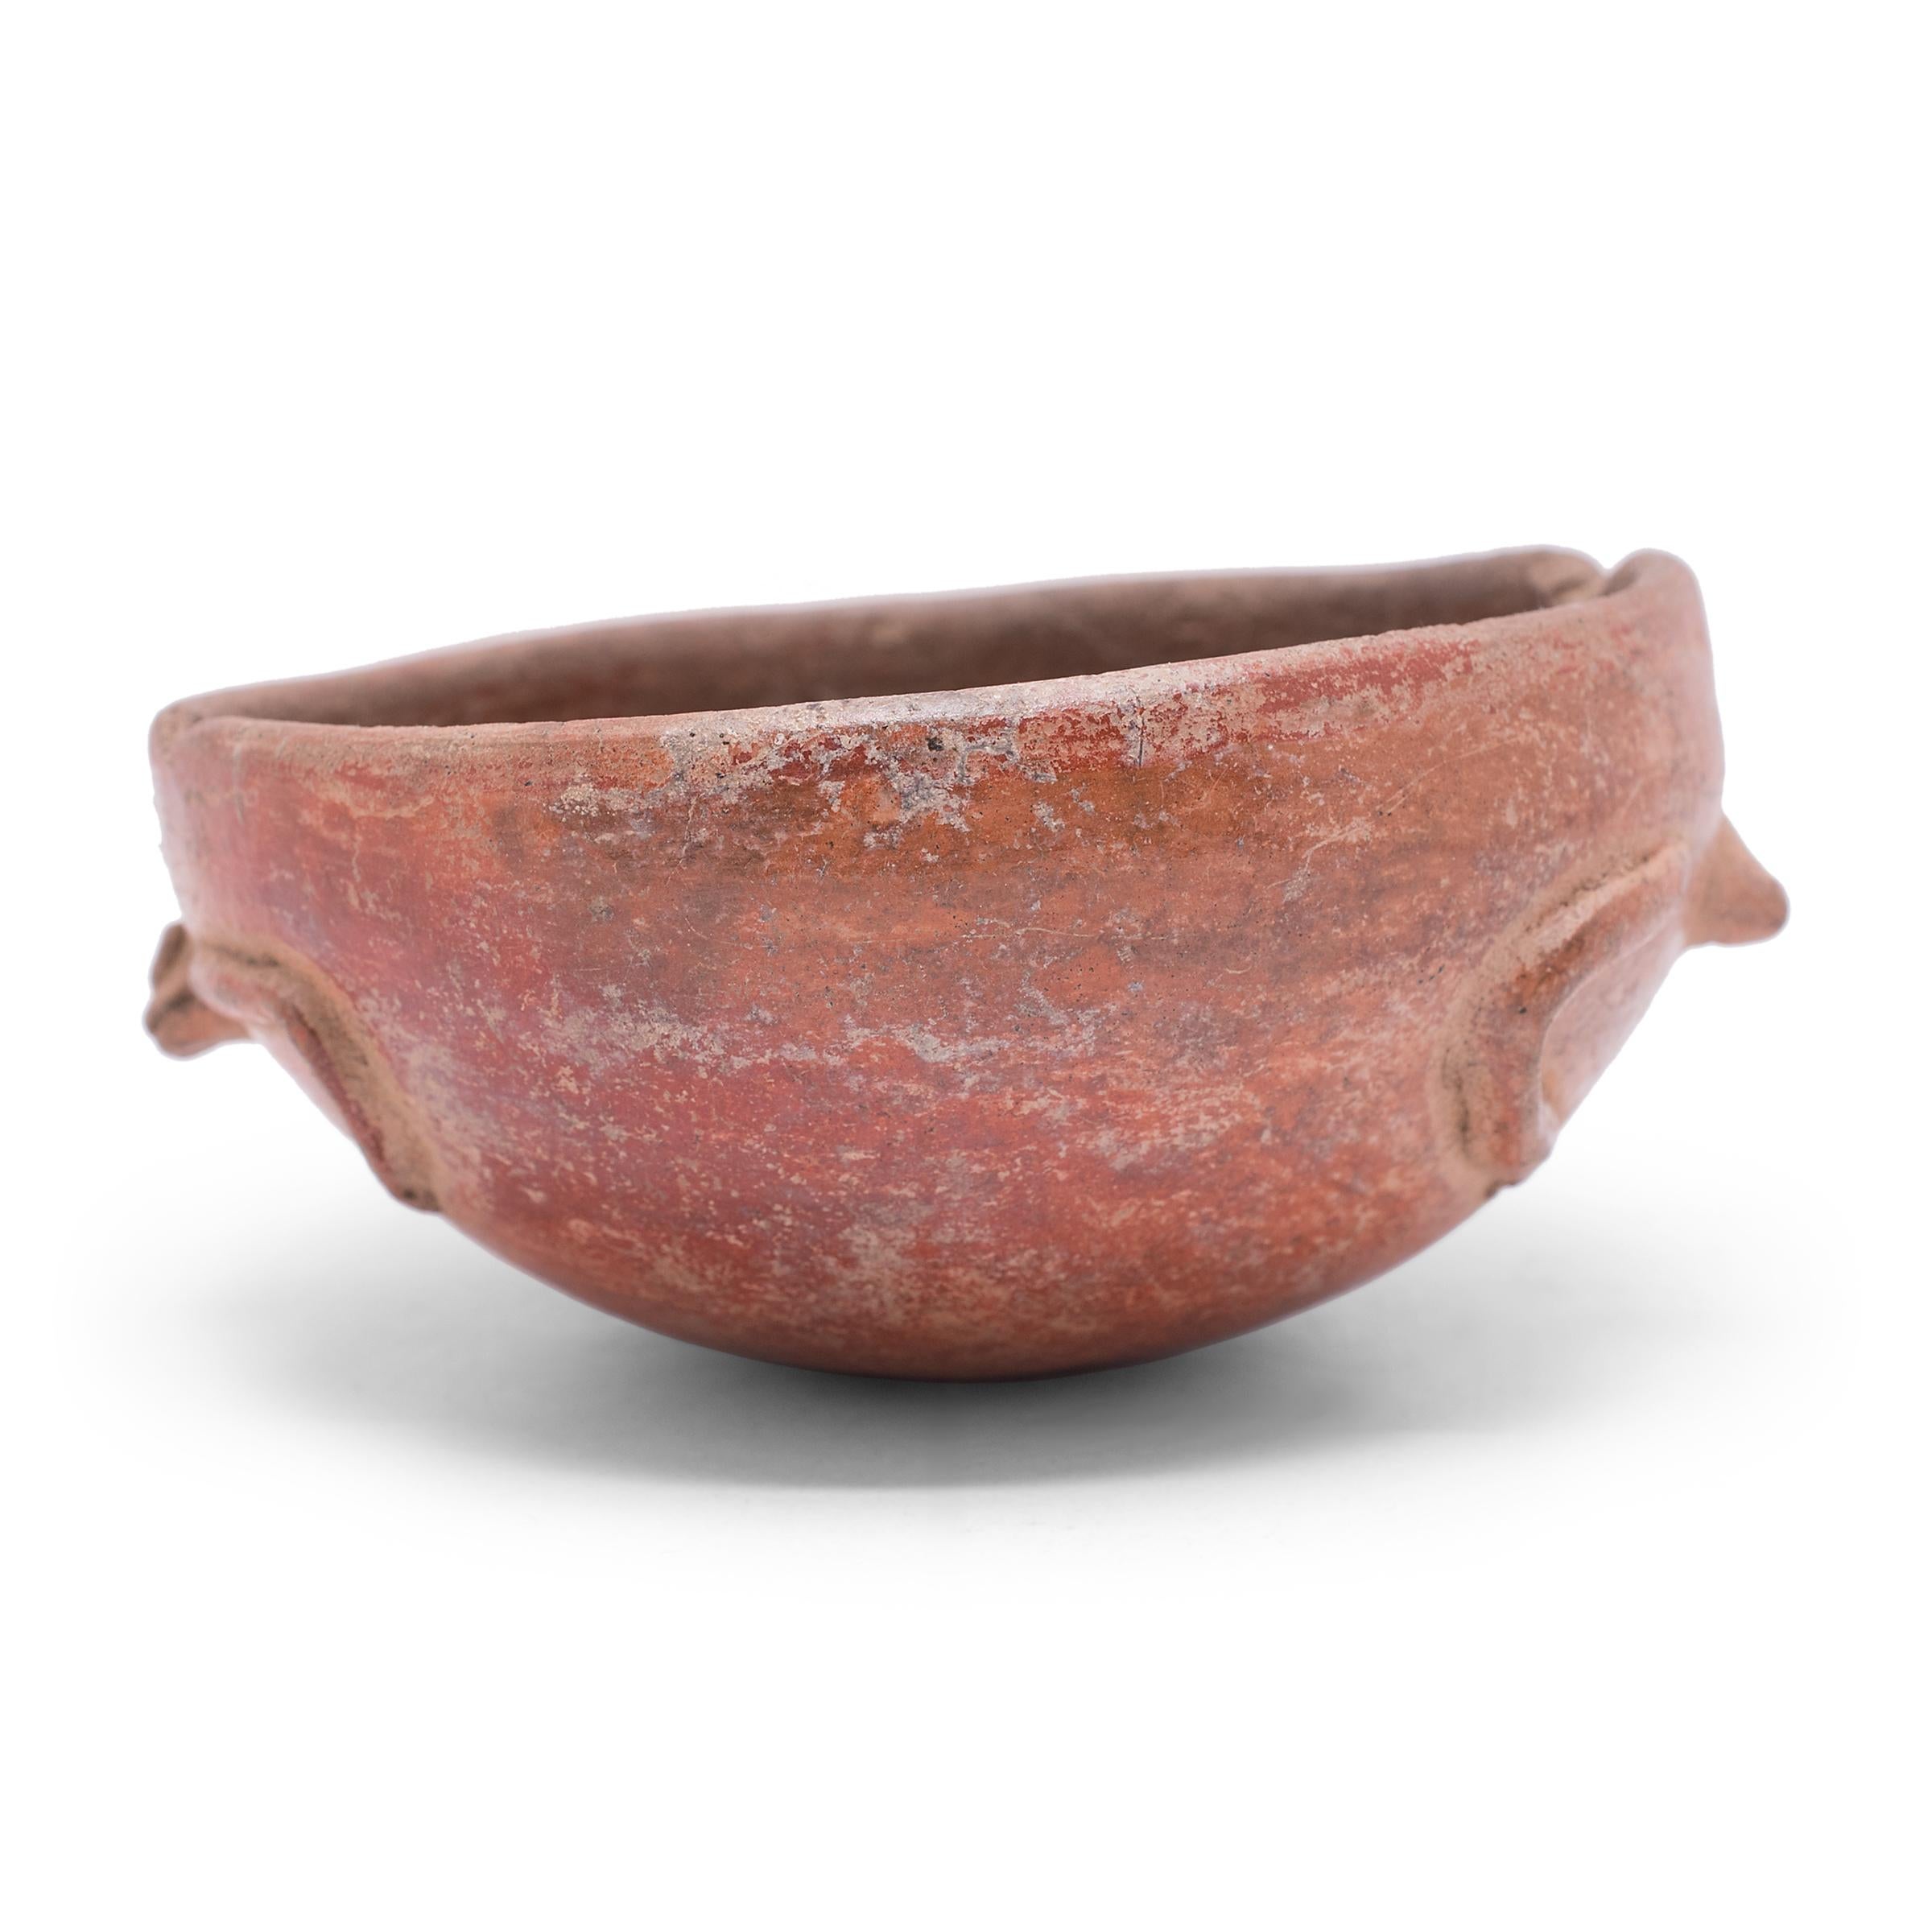 Présentant une riche patine, ce petit bol en terre cuite rouge est attribué à la culture Maya et présente de nombreux signes révélateurs de la poterie Pre-Columbian. Mouchetée d'imperfections, la chaude coloration rouge-orange du récipient a été